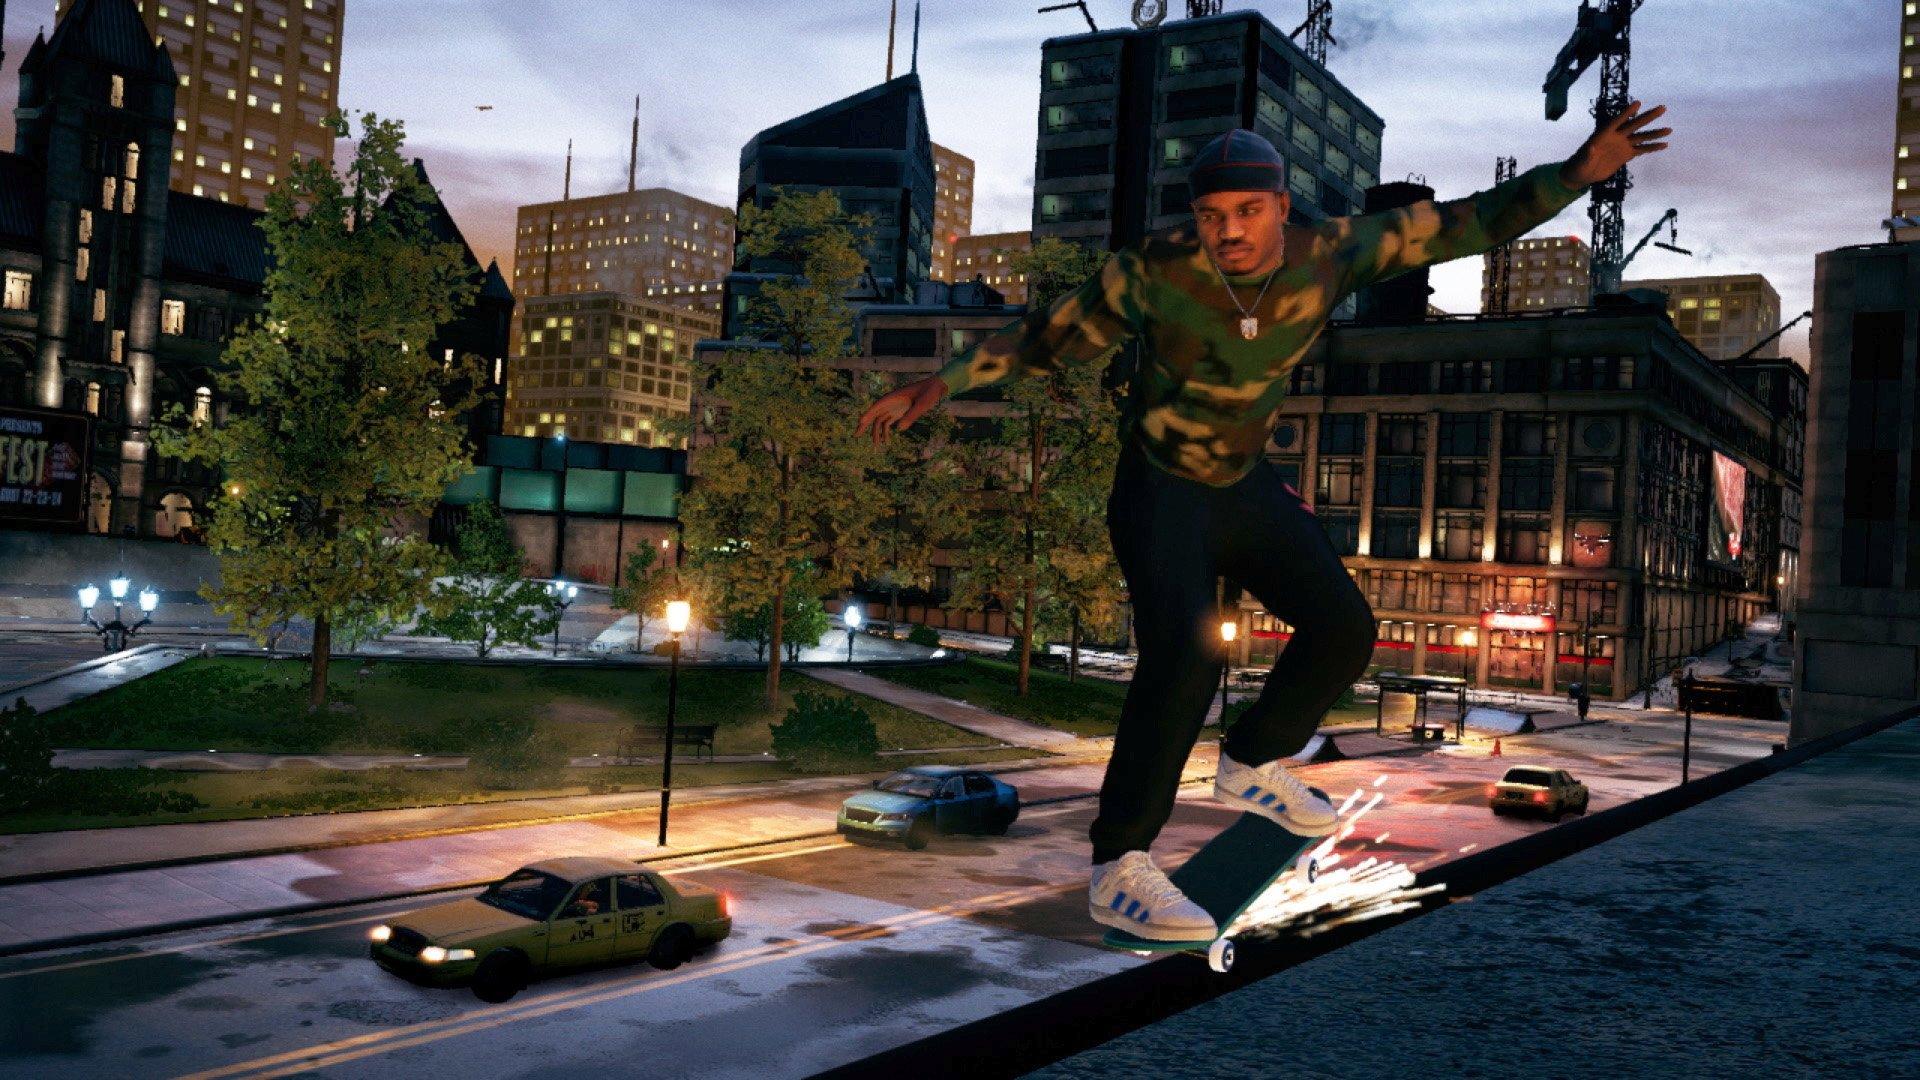 Tony Hawk's Pro Skater - Greatest Hits Used PS1 Games Retro